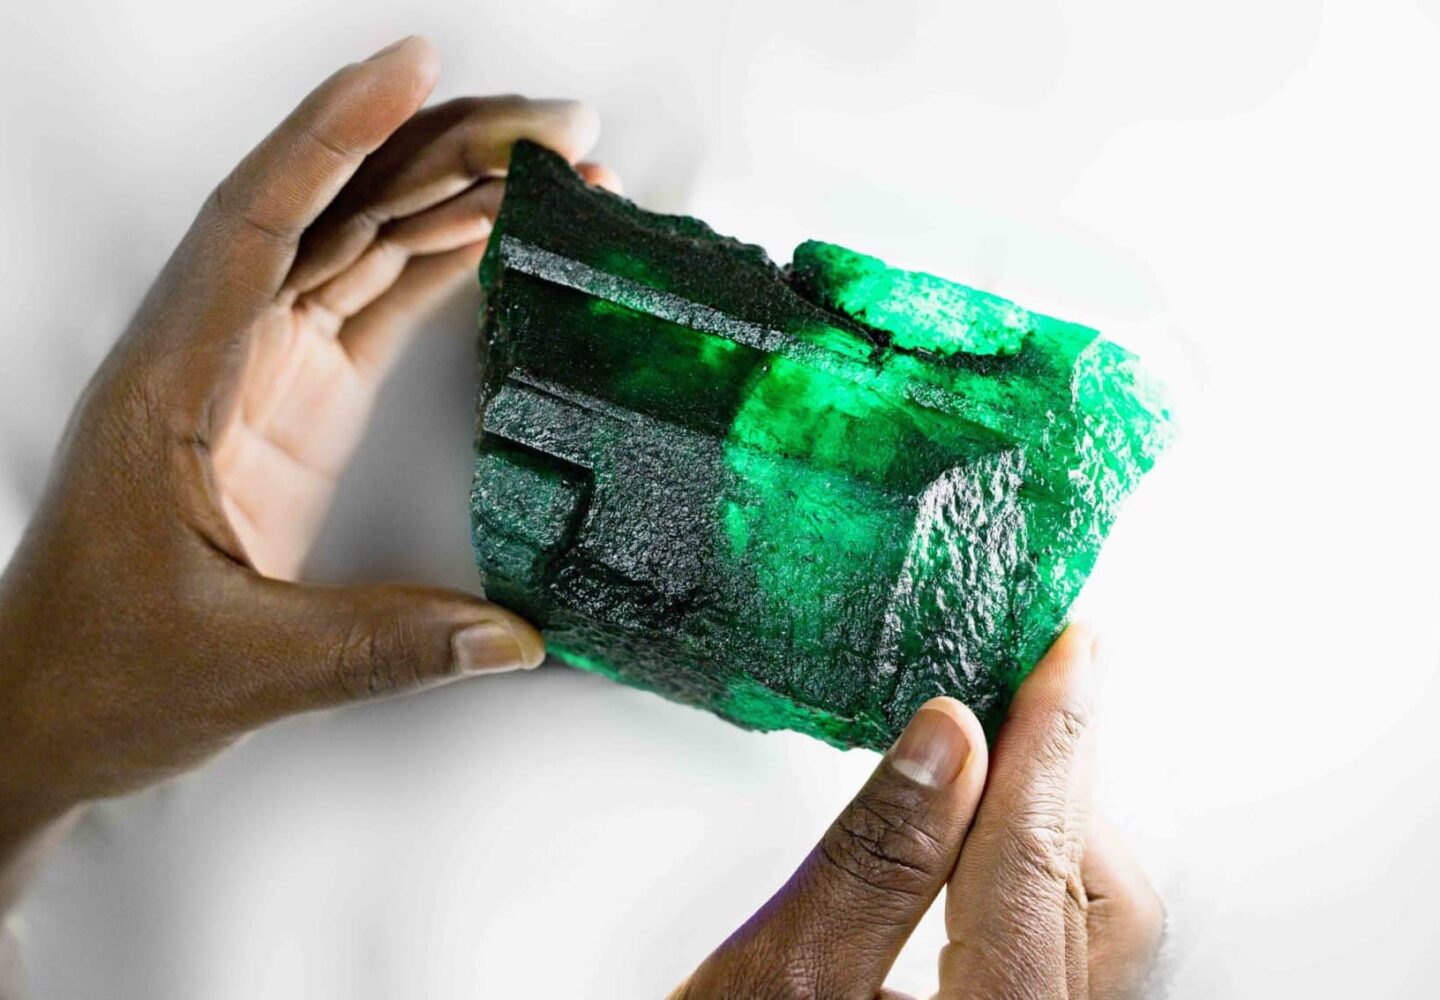 2.5 pound emerald from Zambia